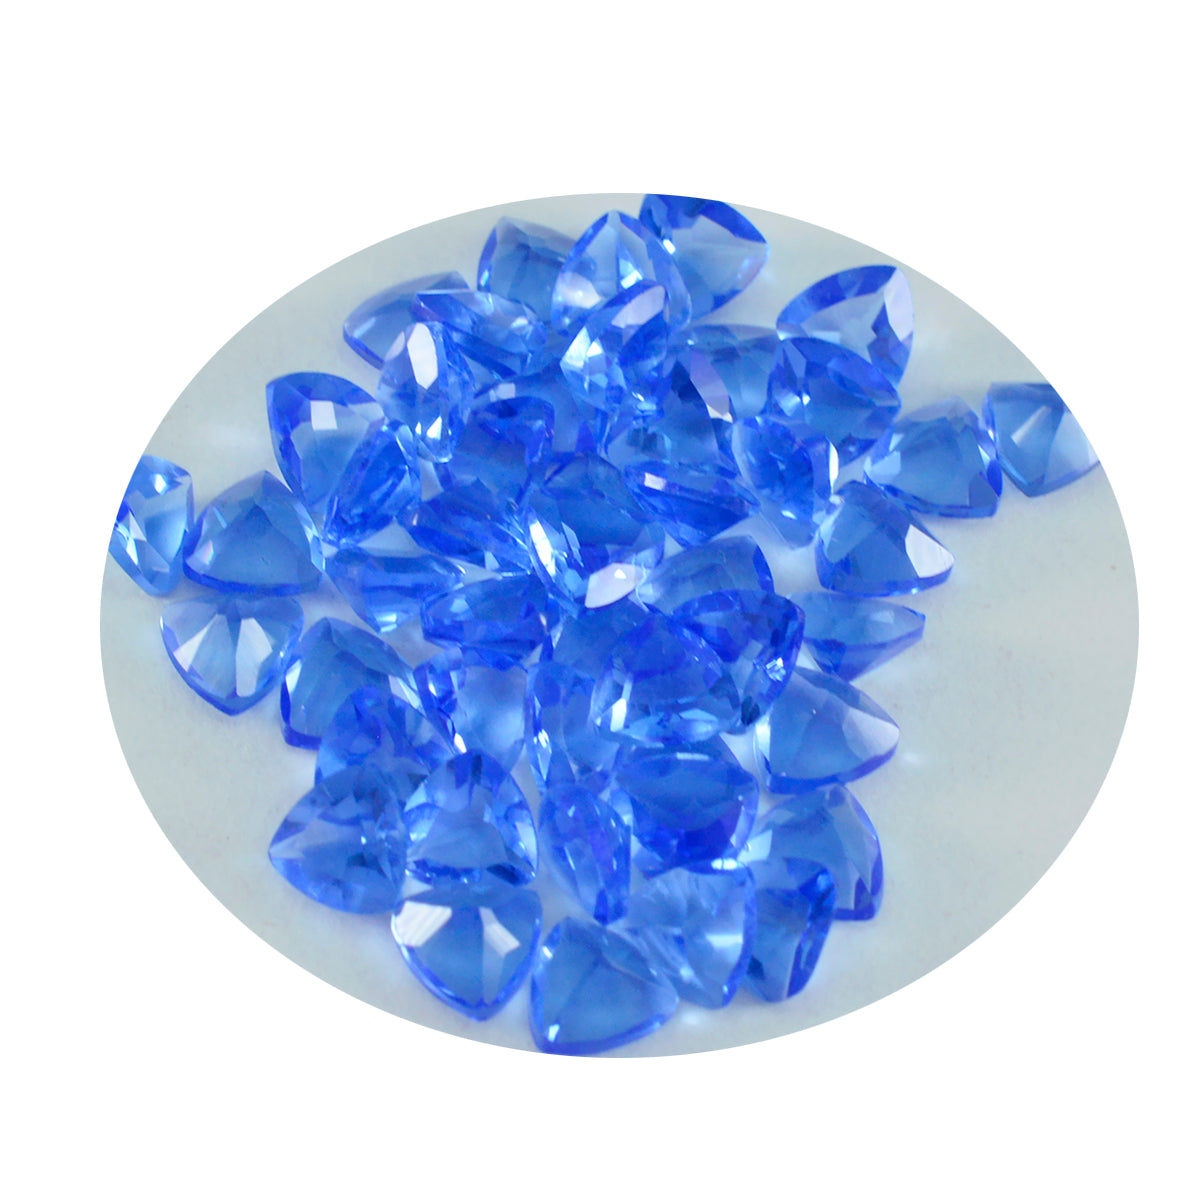 riyogems 1 шт. синий сапфир cz ограненный 5x5 мм форма триллиона отличное качество свободный драгоценный камень